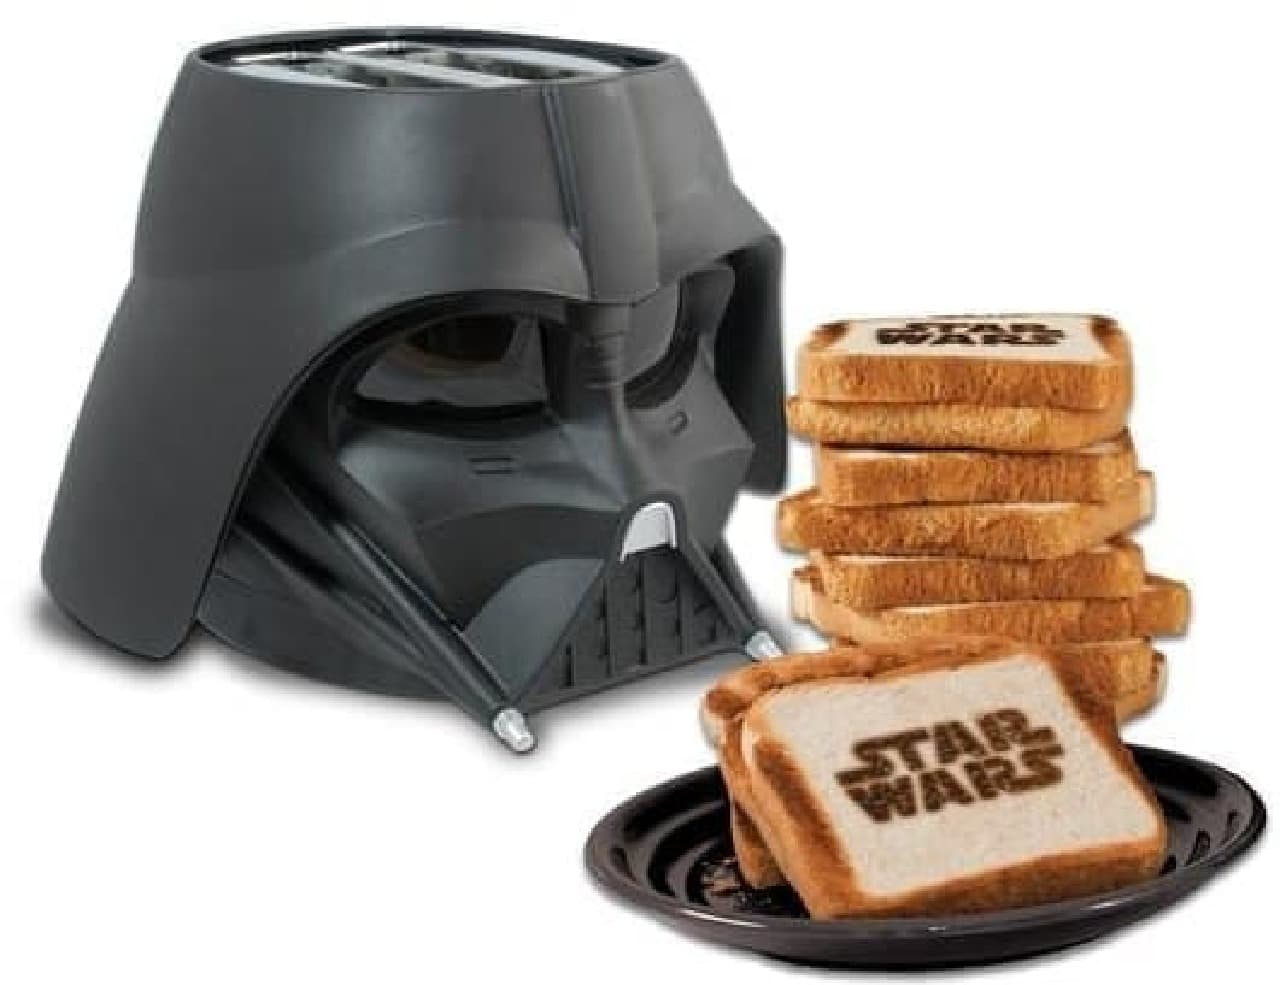 Star Wars "Darth Vader" Toaster